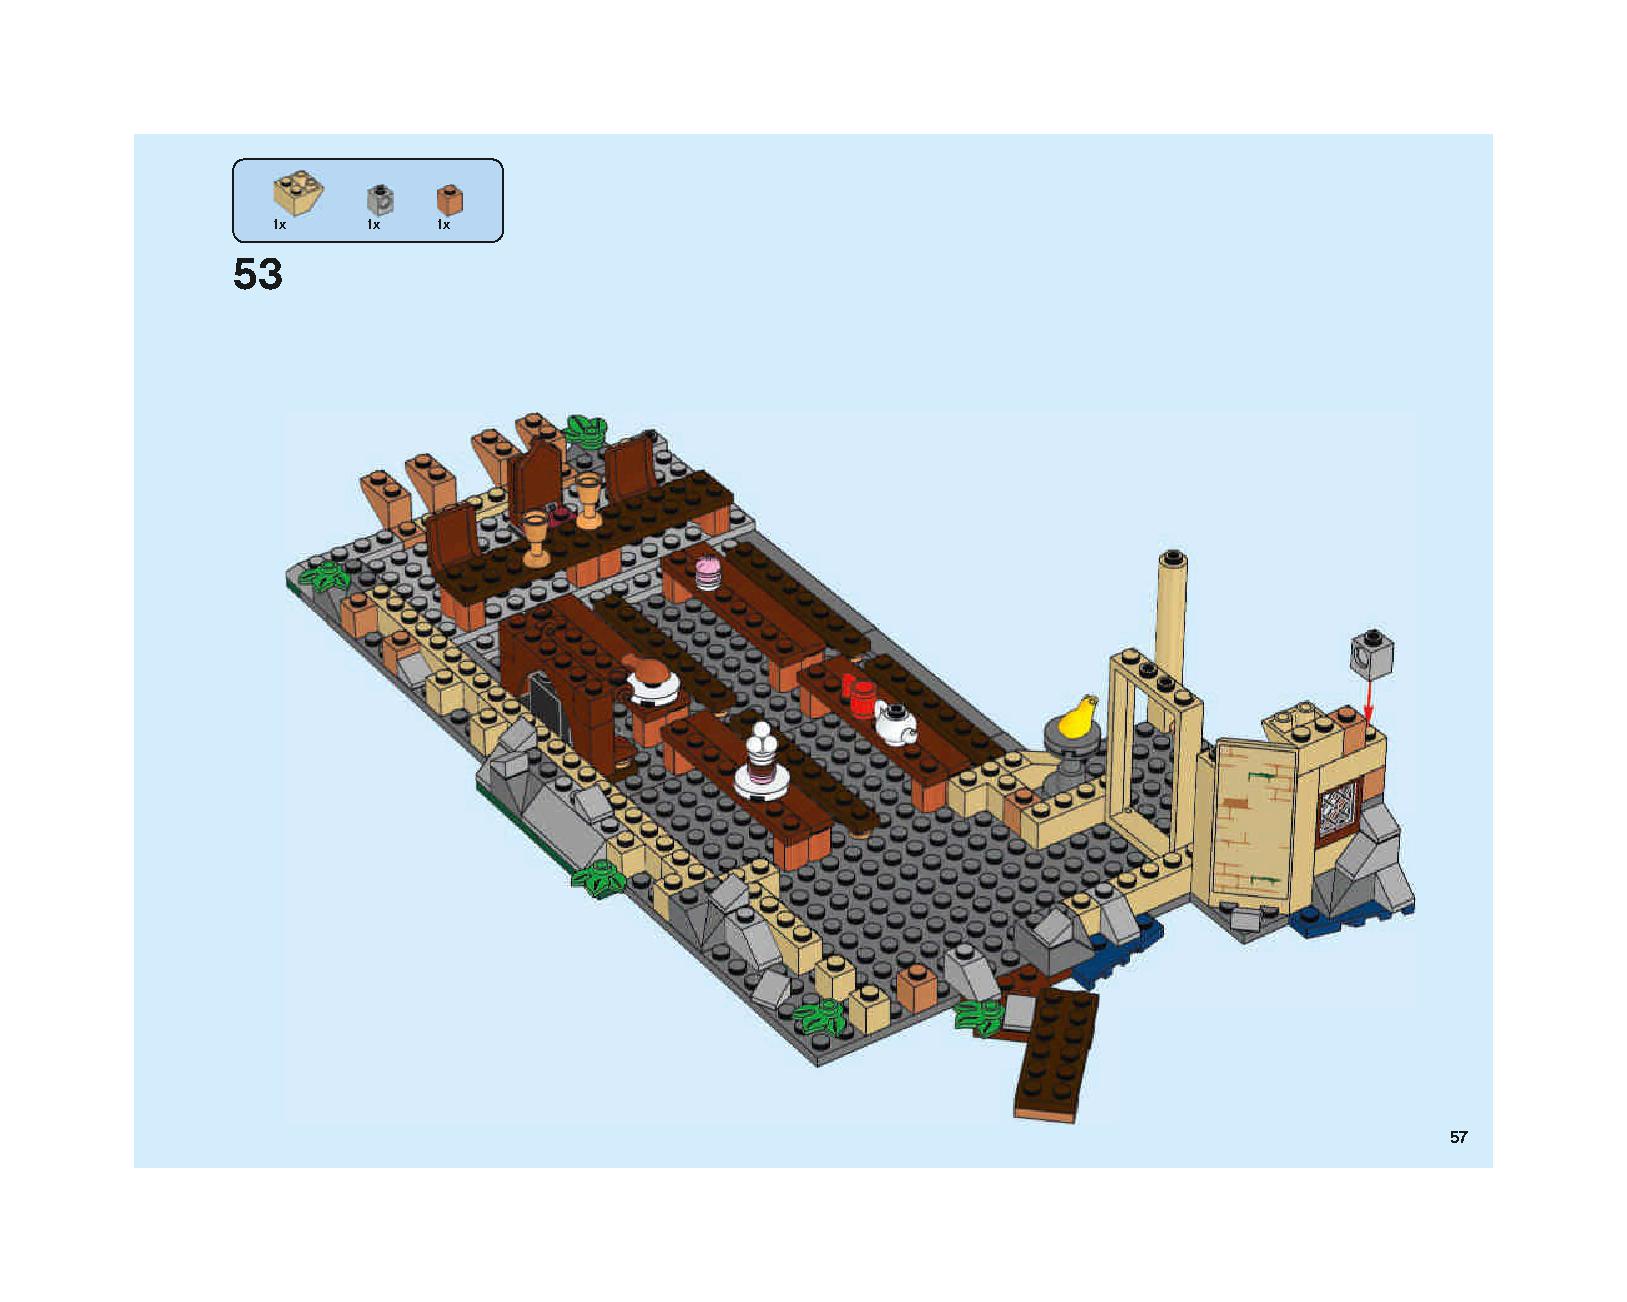 ホグワーツの大広間 75954 レゴの商品情報 レゴの説明書・組立方法 57 page